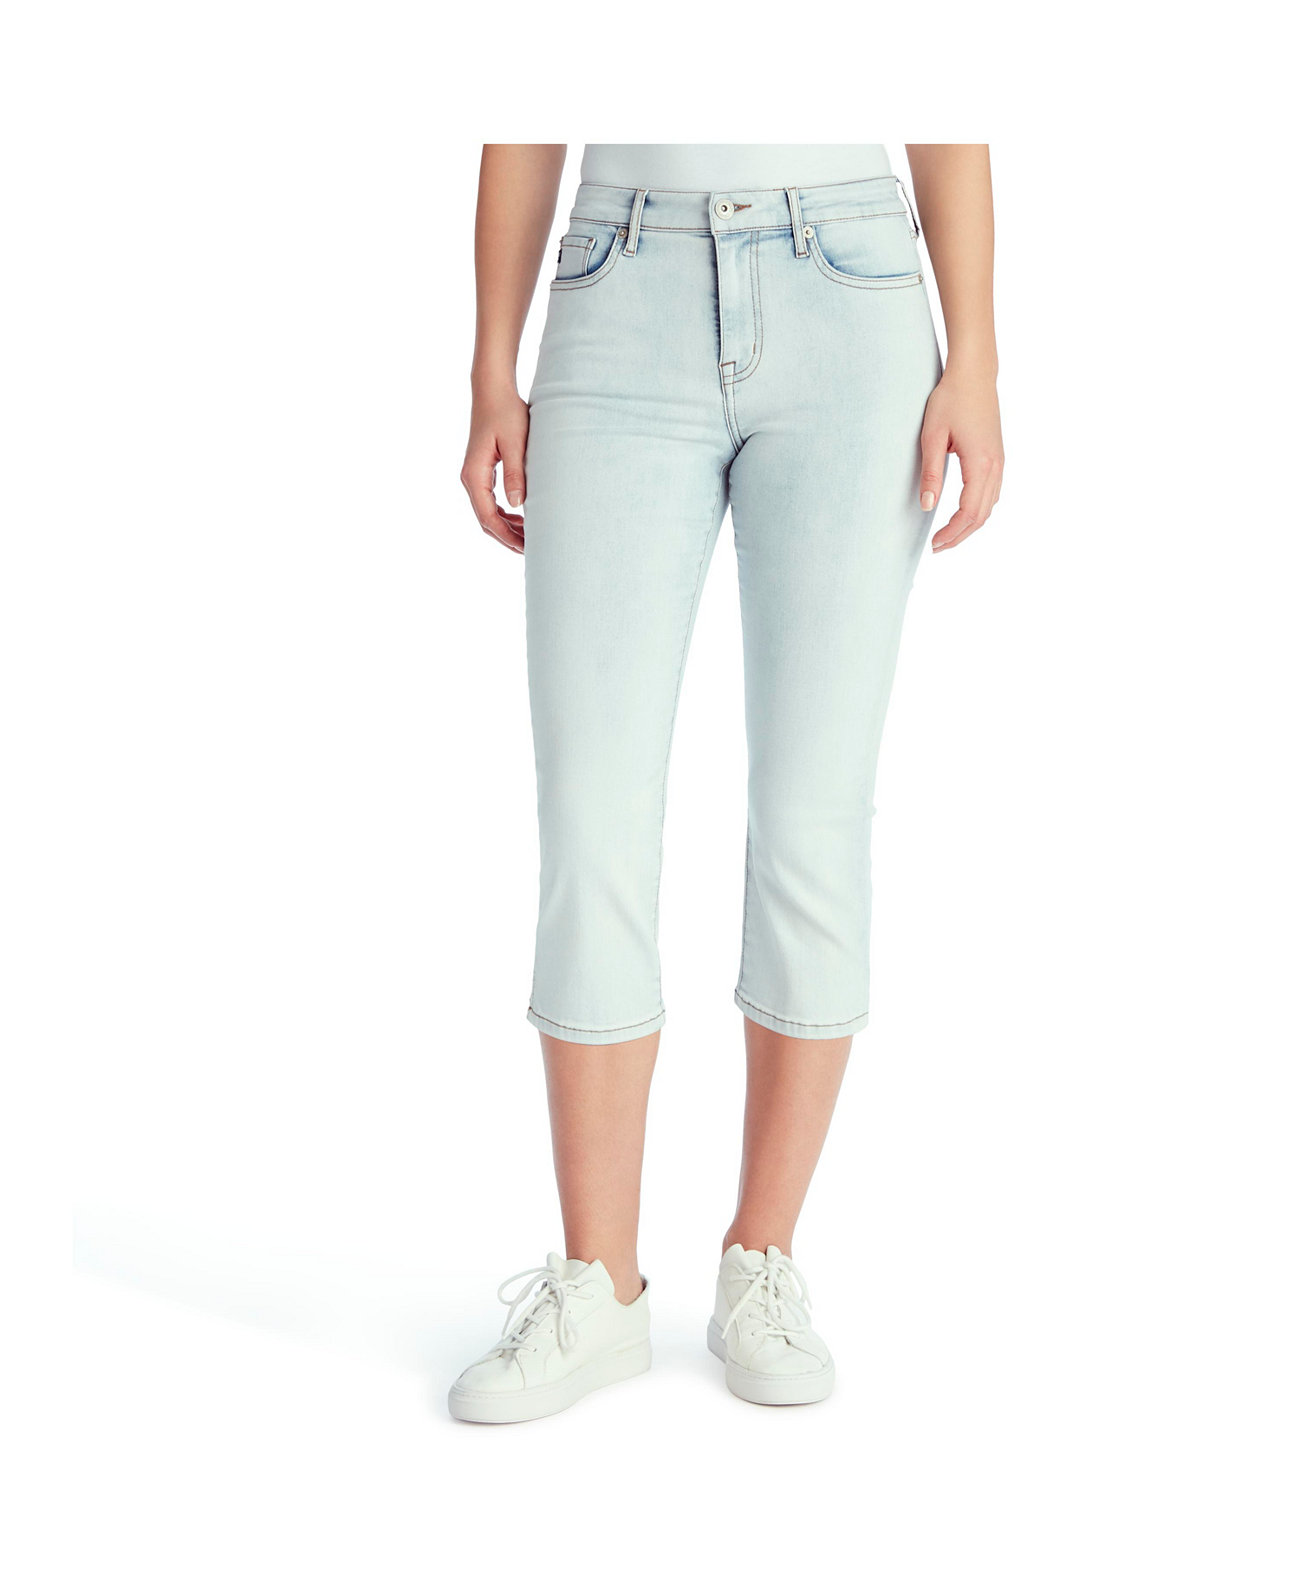 Женские джинсы среднего размера с капри CHAPS